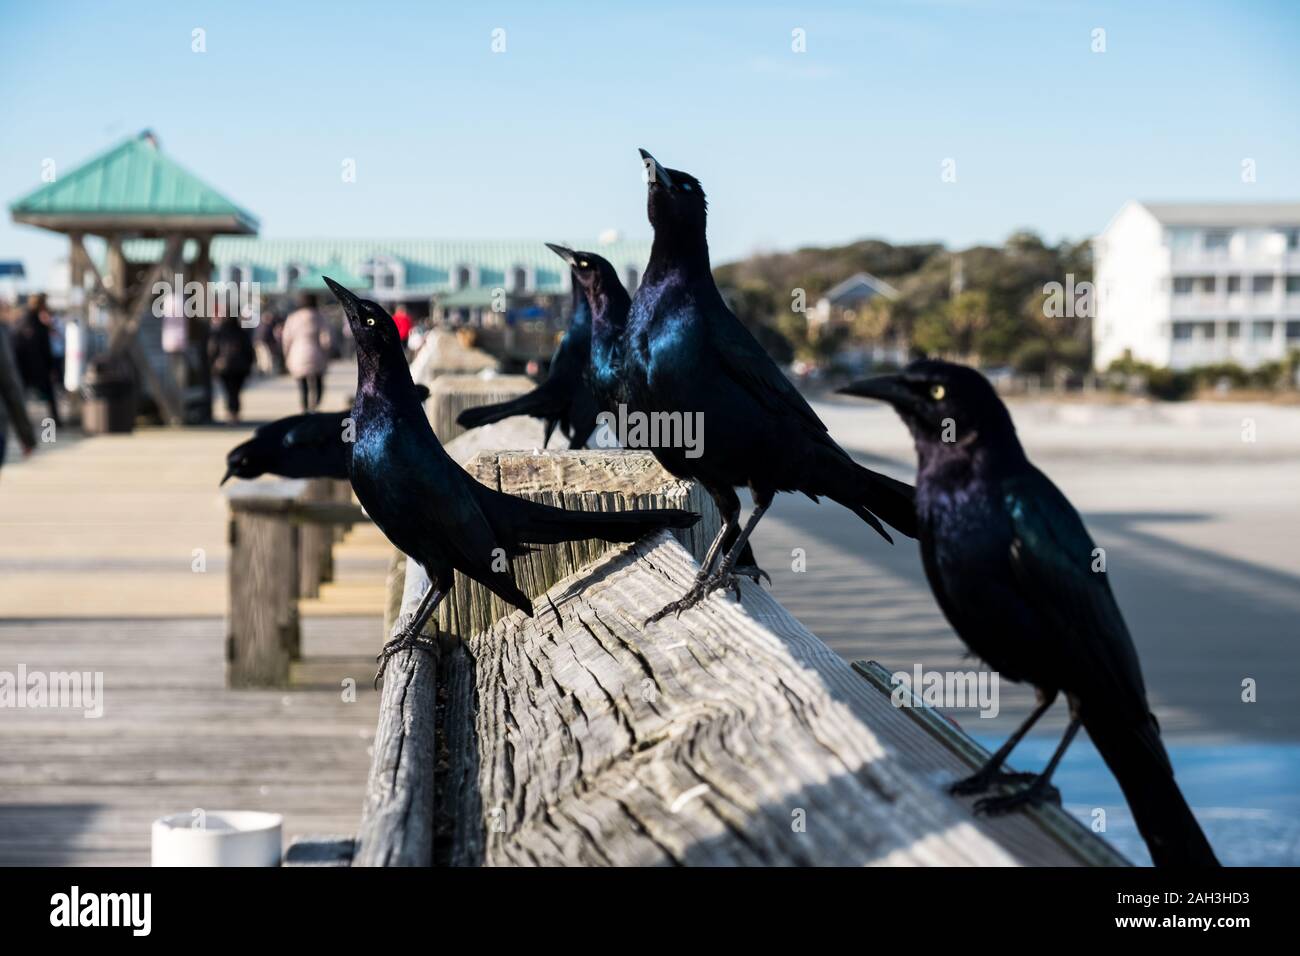 Nahaufnahme Foto von Brauereien schwarze Vögel sitzen auf hölzernen Pier Stockfoto